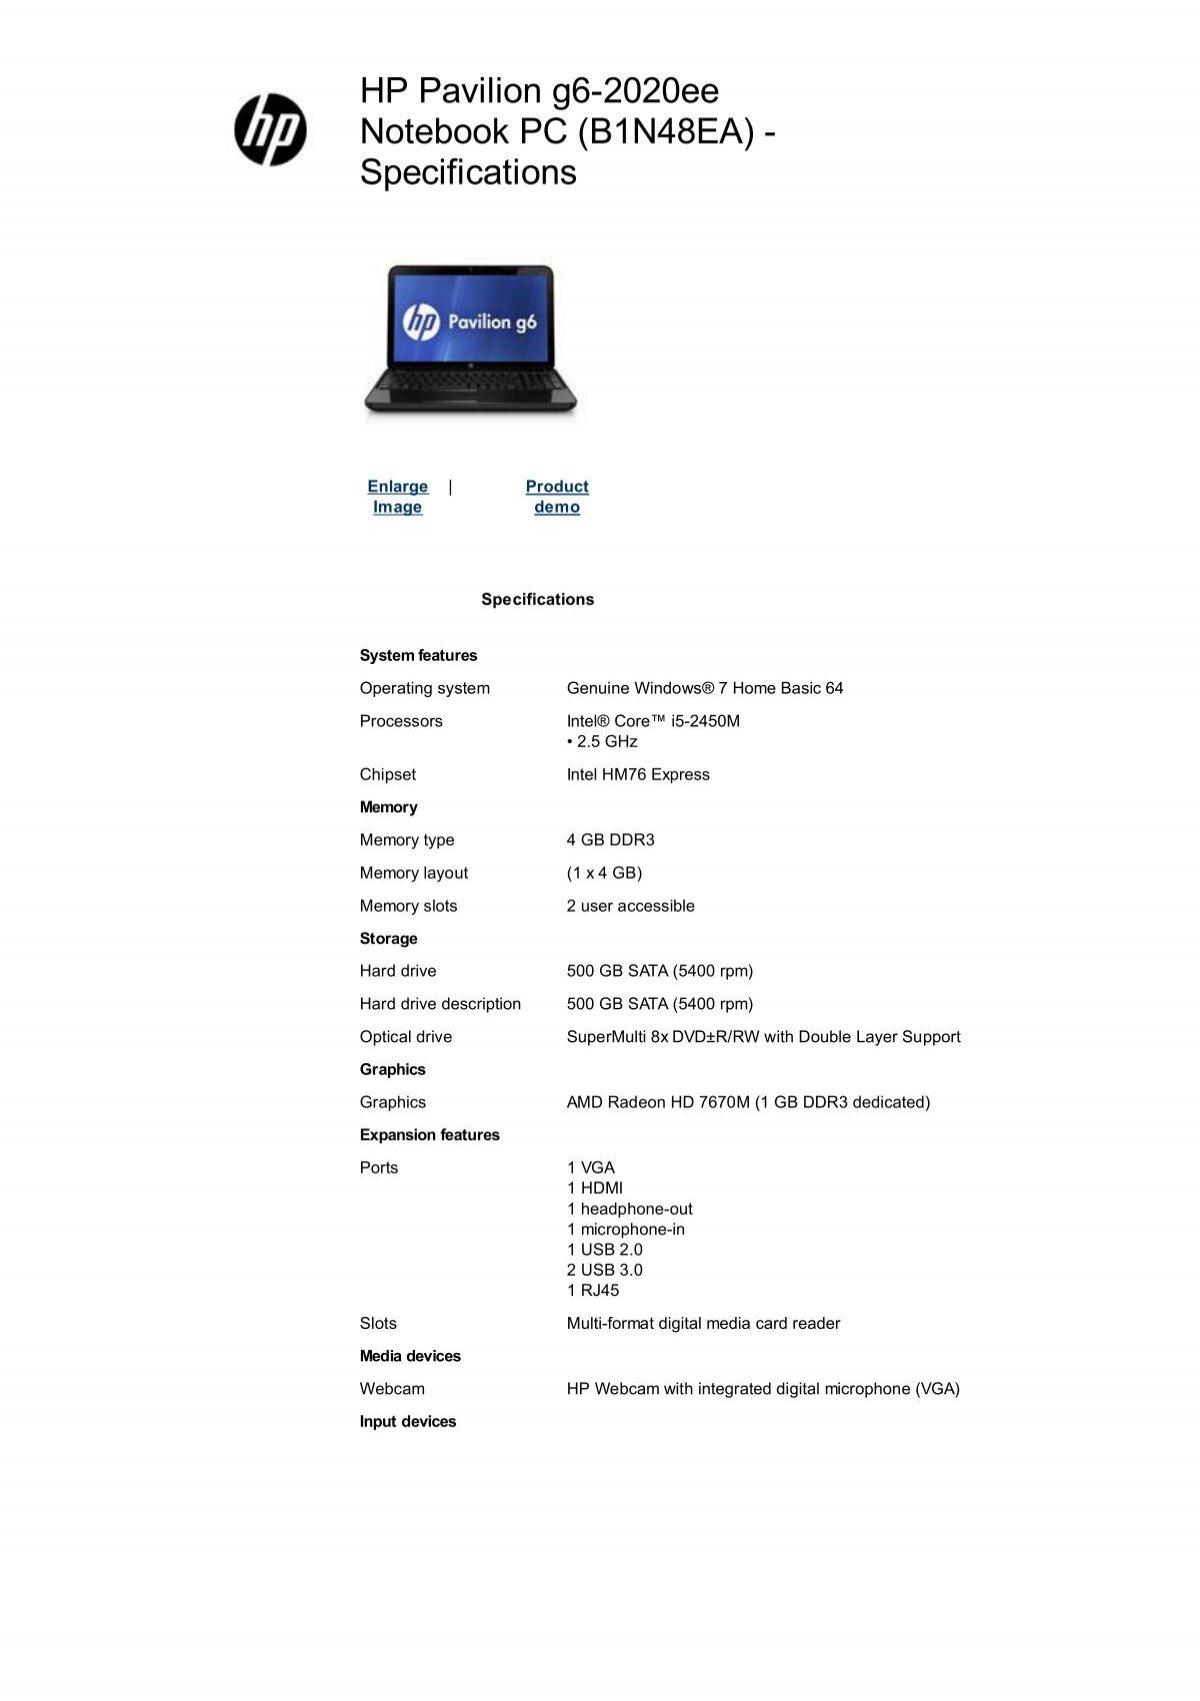 HP Pavilion g6-2020ee Notebook (B1N48EA - Microcity